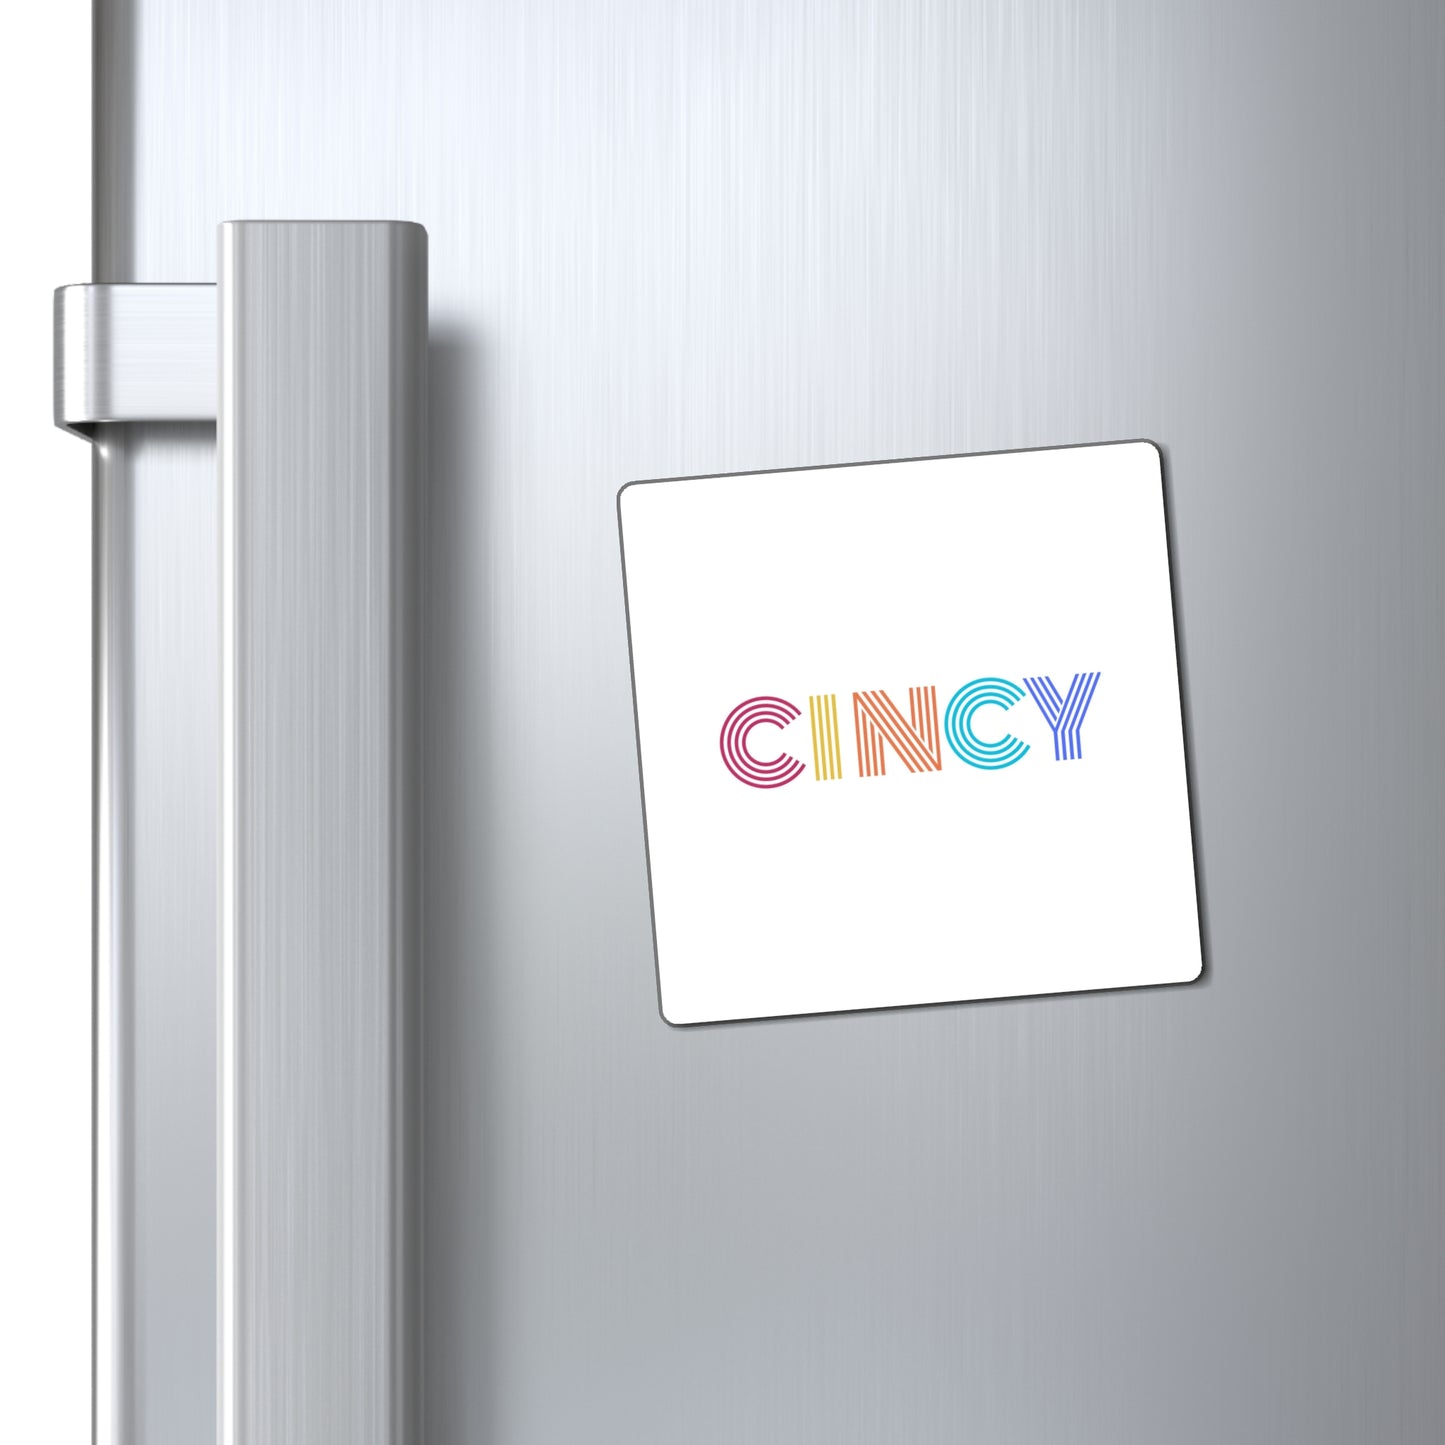 CINCY Magnet